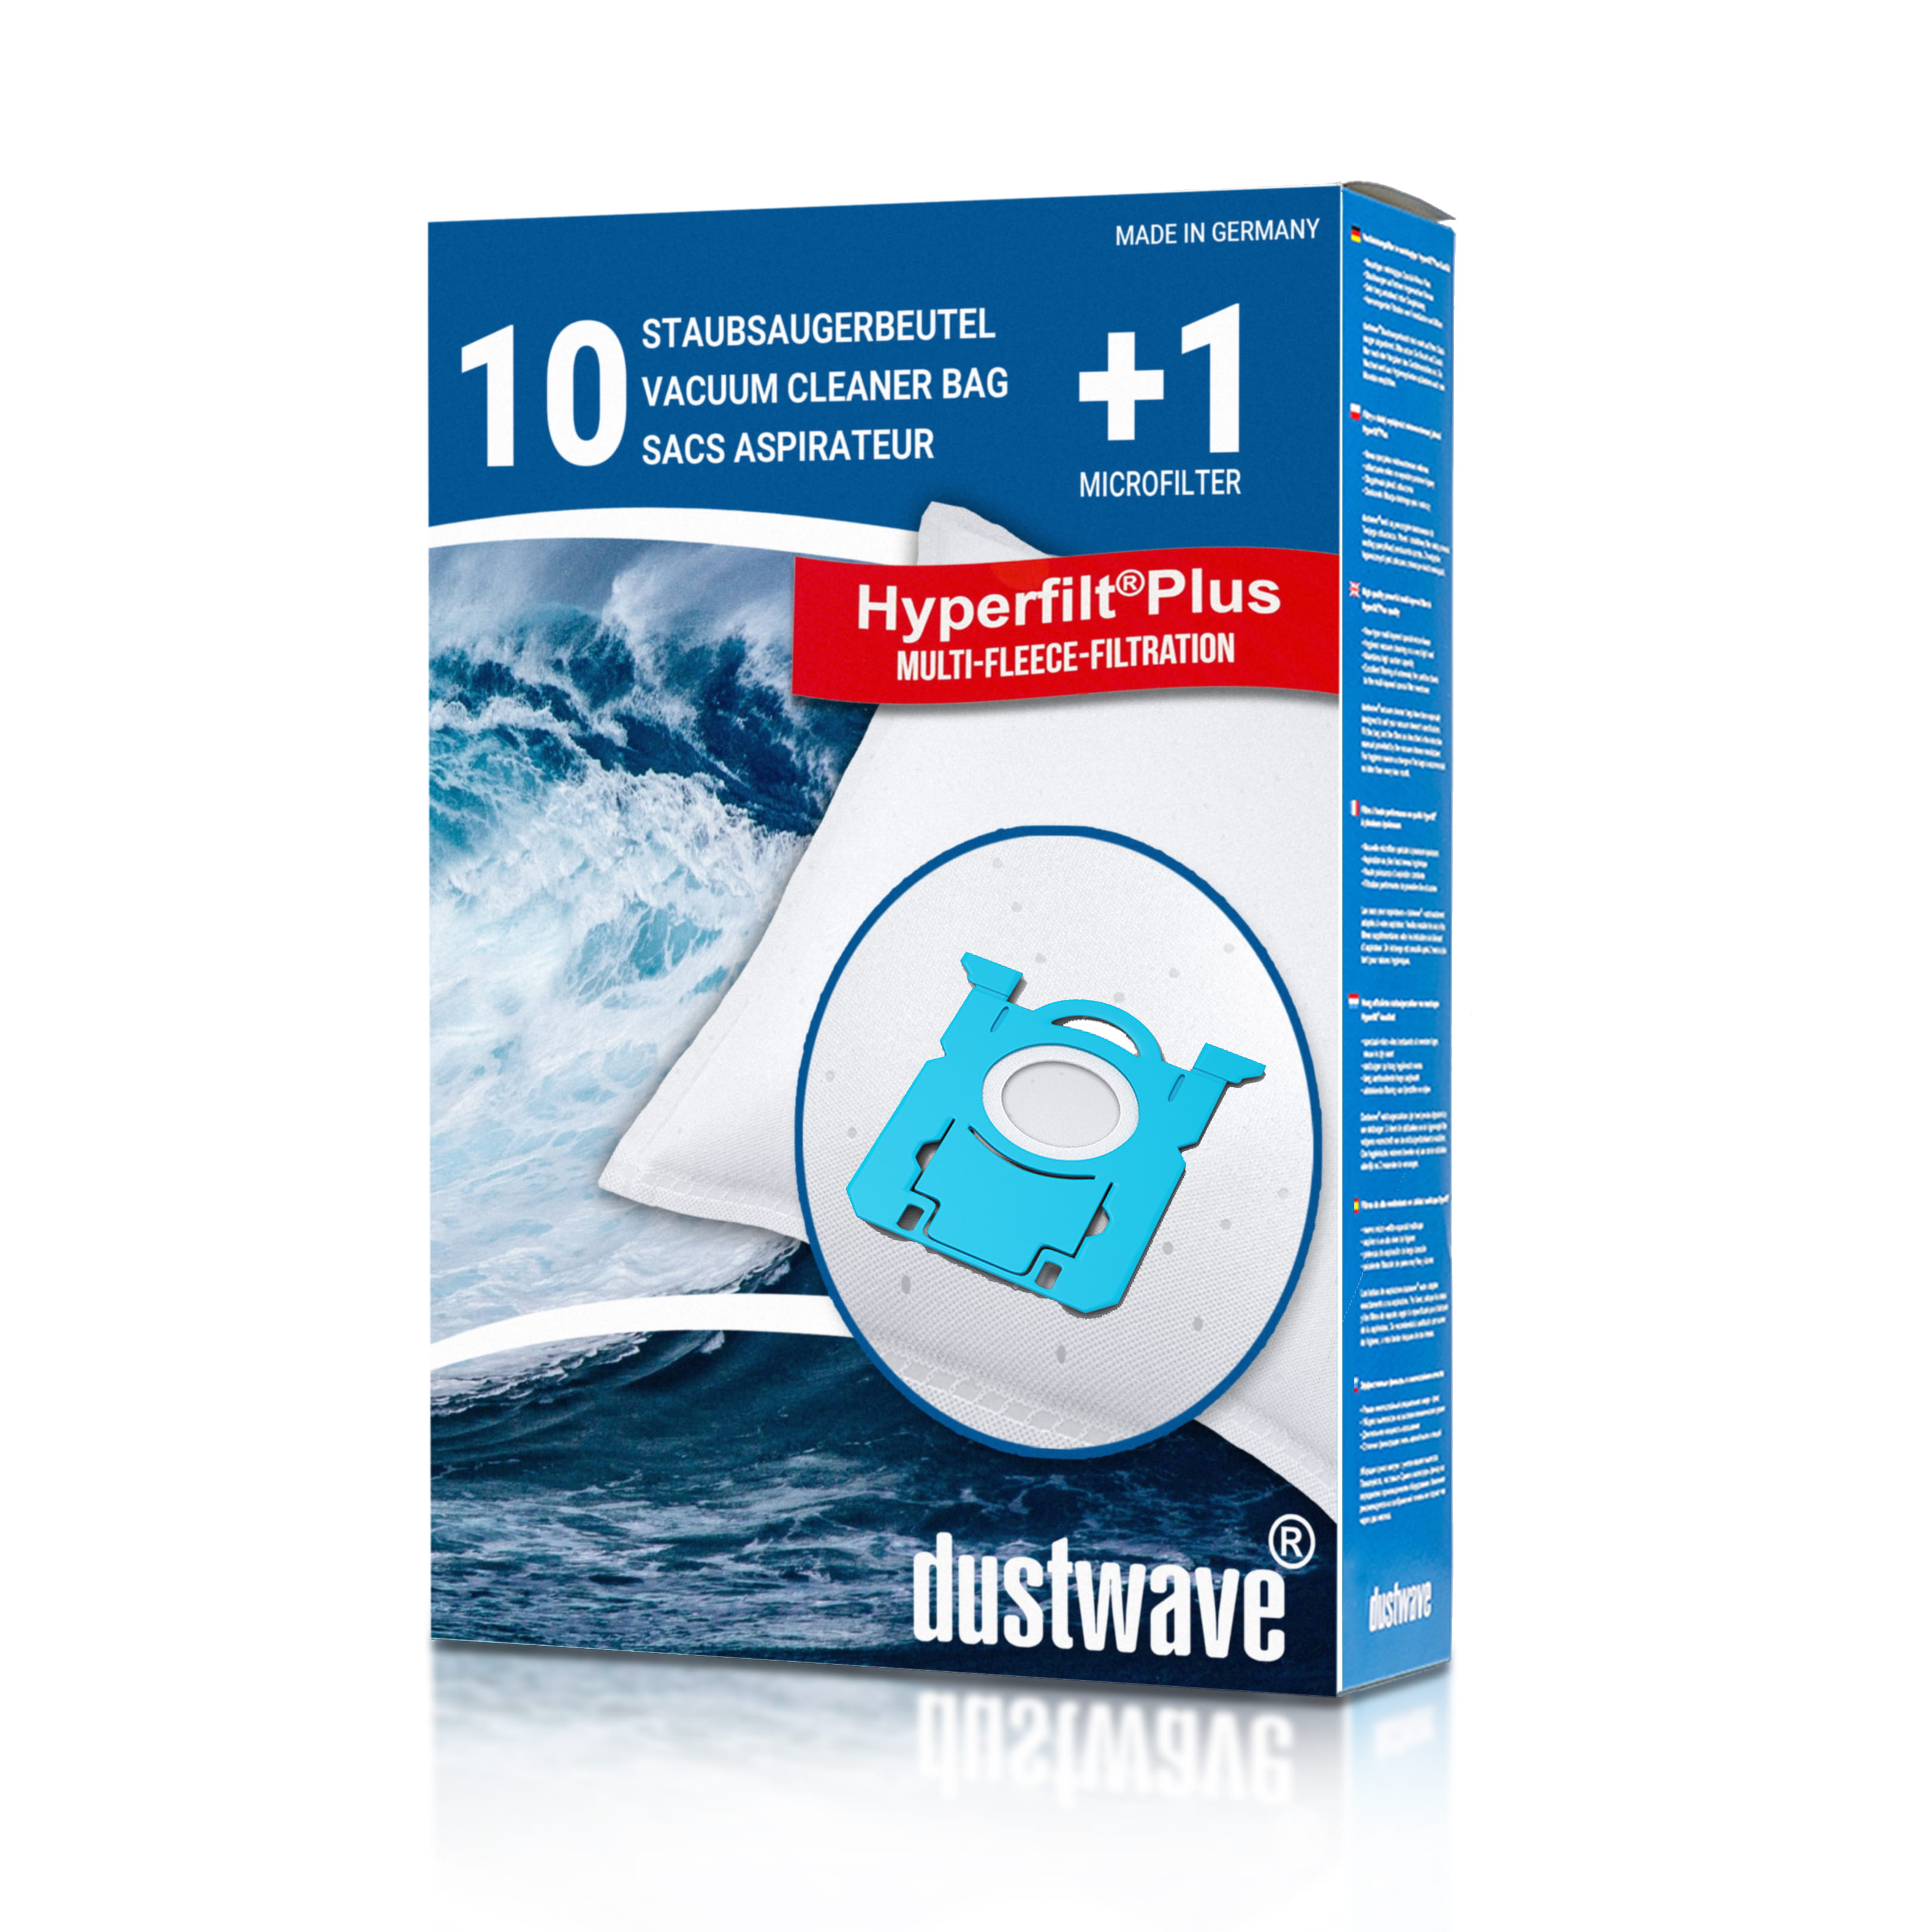 Dustwave® 10 Staubsaugerbeutel für AEG VX9-1-TM-E - hocheffizient, mehrlagiges Mikrovlies mit Hygieneverschluss - Made in Germany